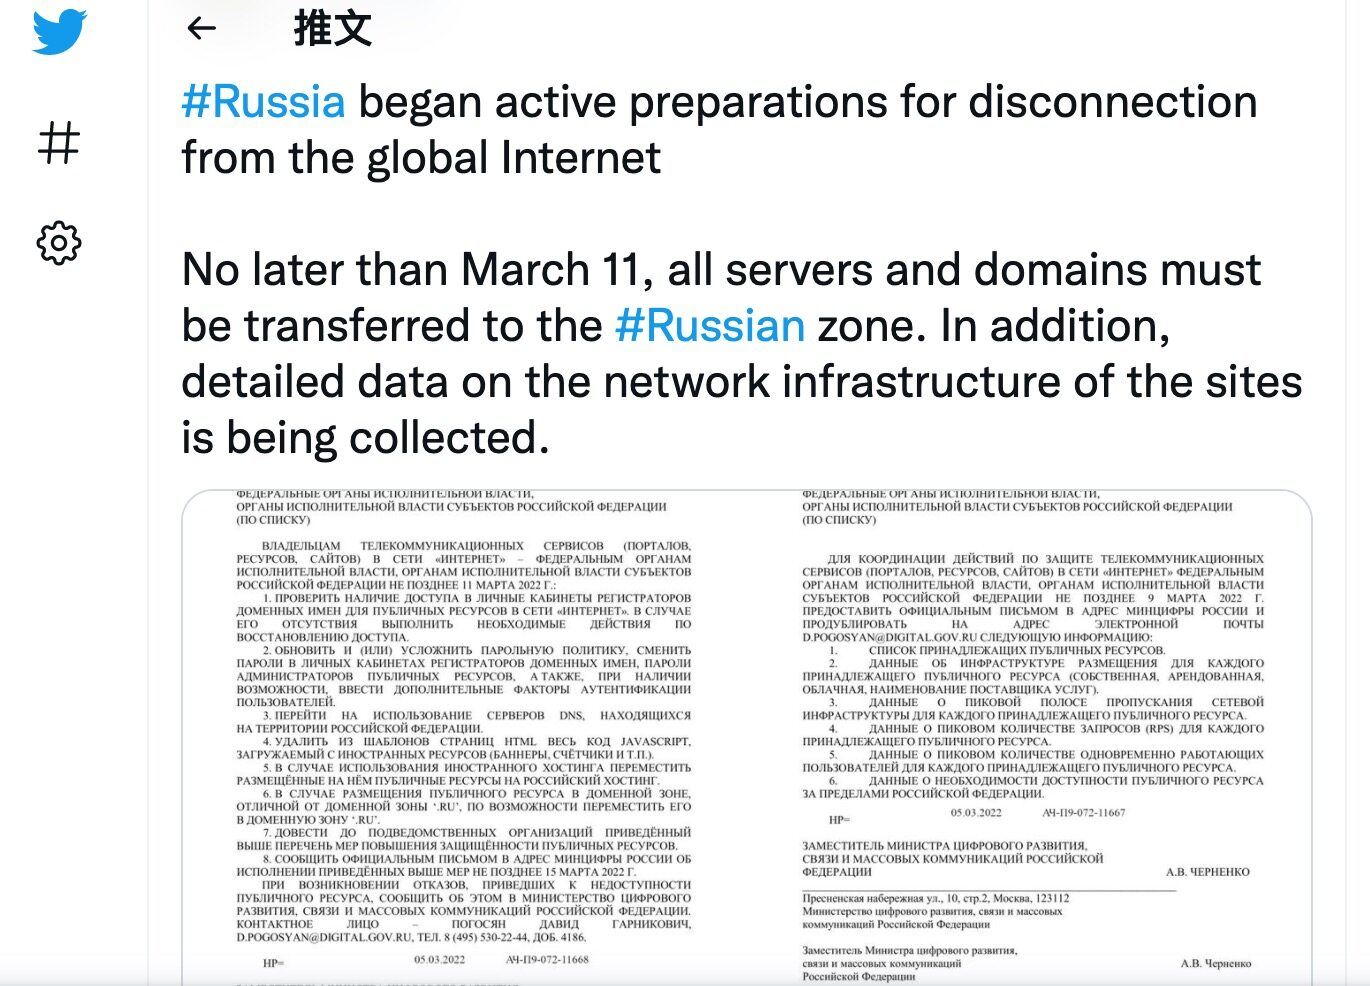 俄罗斯否认将断开与国际互联网的连接，3 年前曾进行过断网测试